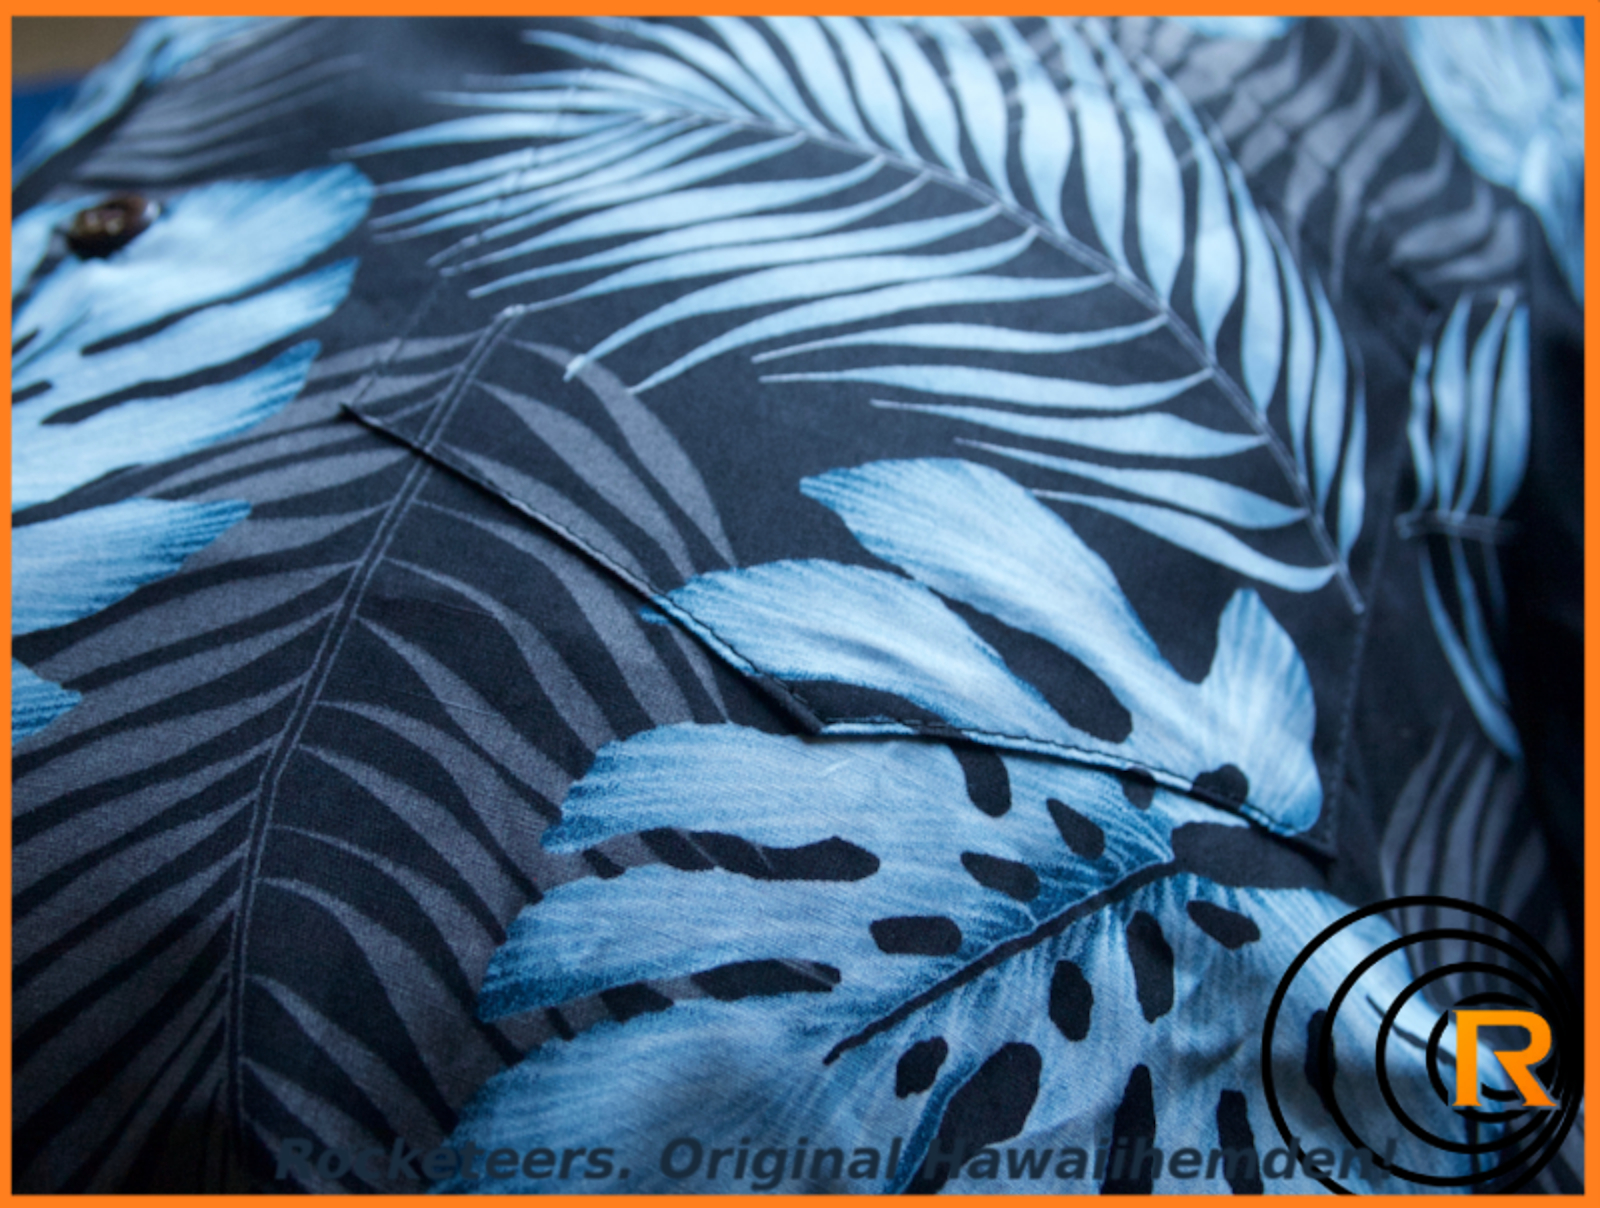 Das Bild zeigt original Hawaiihemd Blue Moon. Blau Schwarz Detail Kokosnussknöpfe.